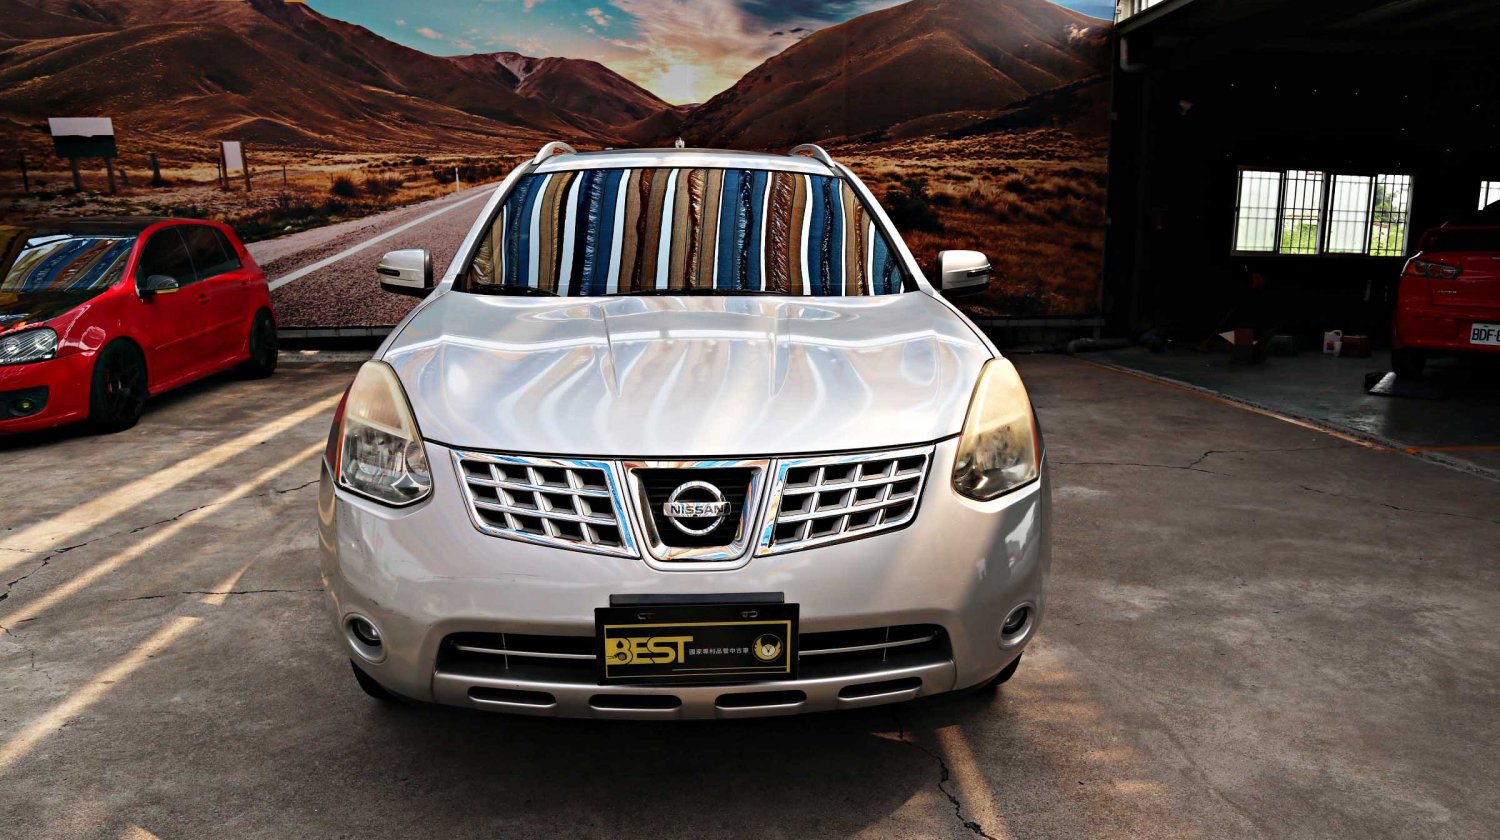 Nissan 日產 ／ Rogue ／ 2009年 ／ 2009年 Nissan Rogue 銀色 日產中古休旅車 ／ 成交區